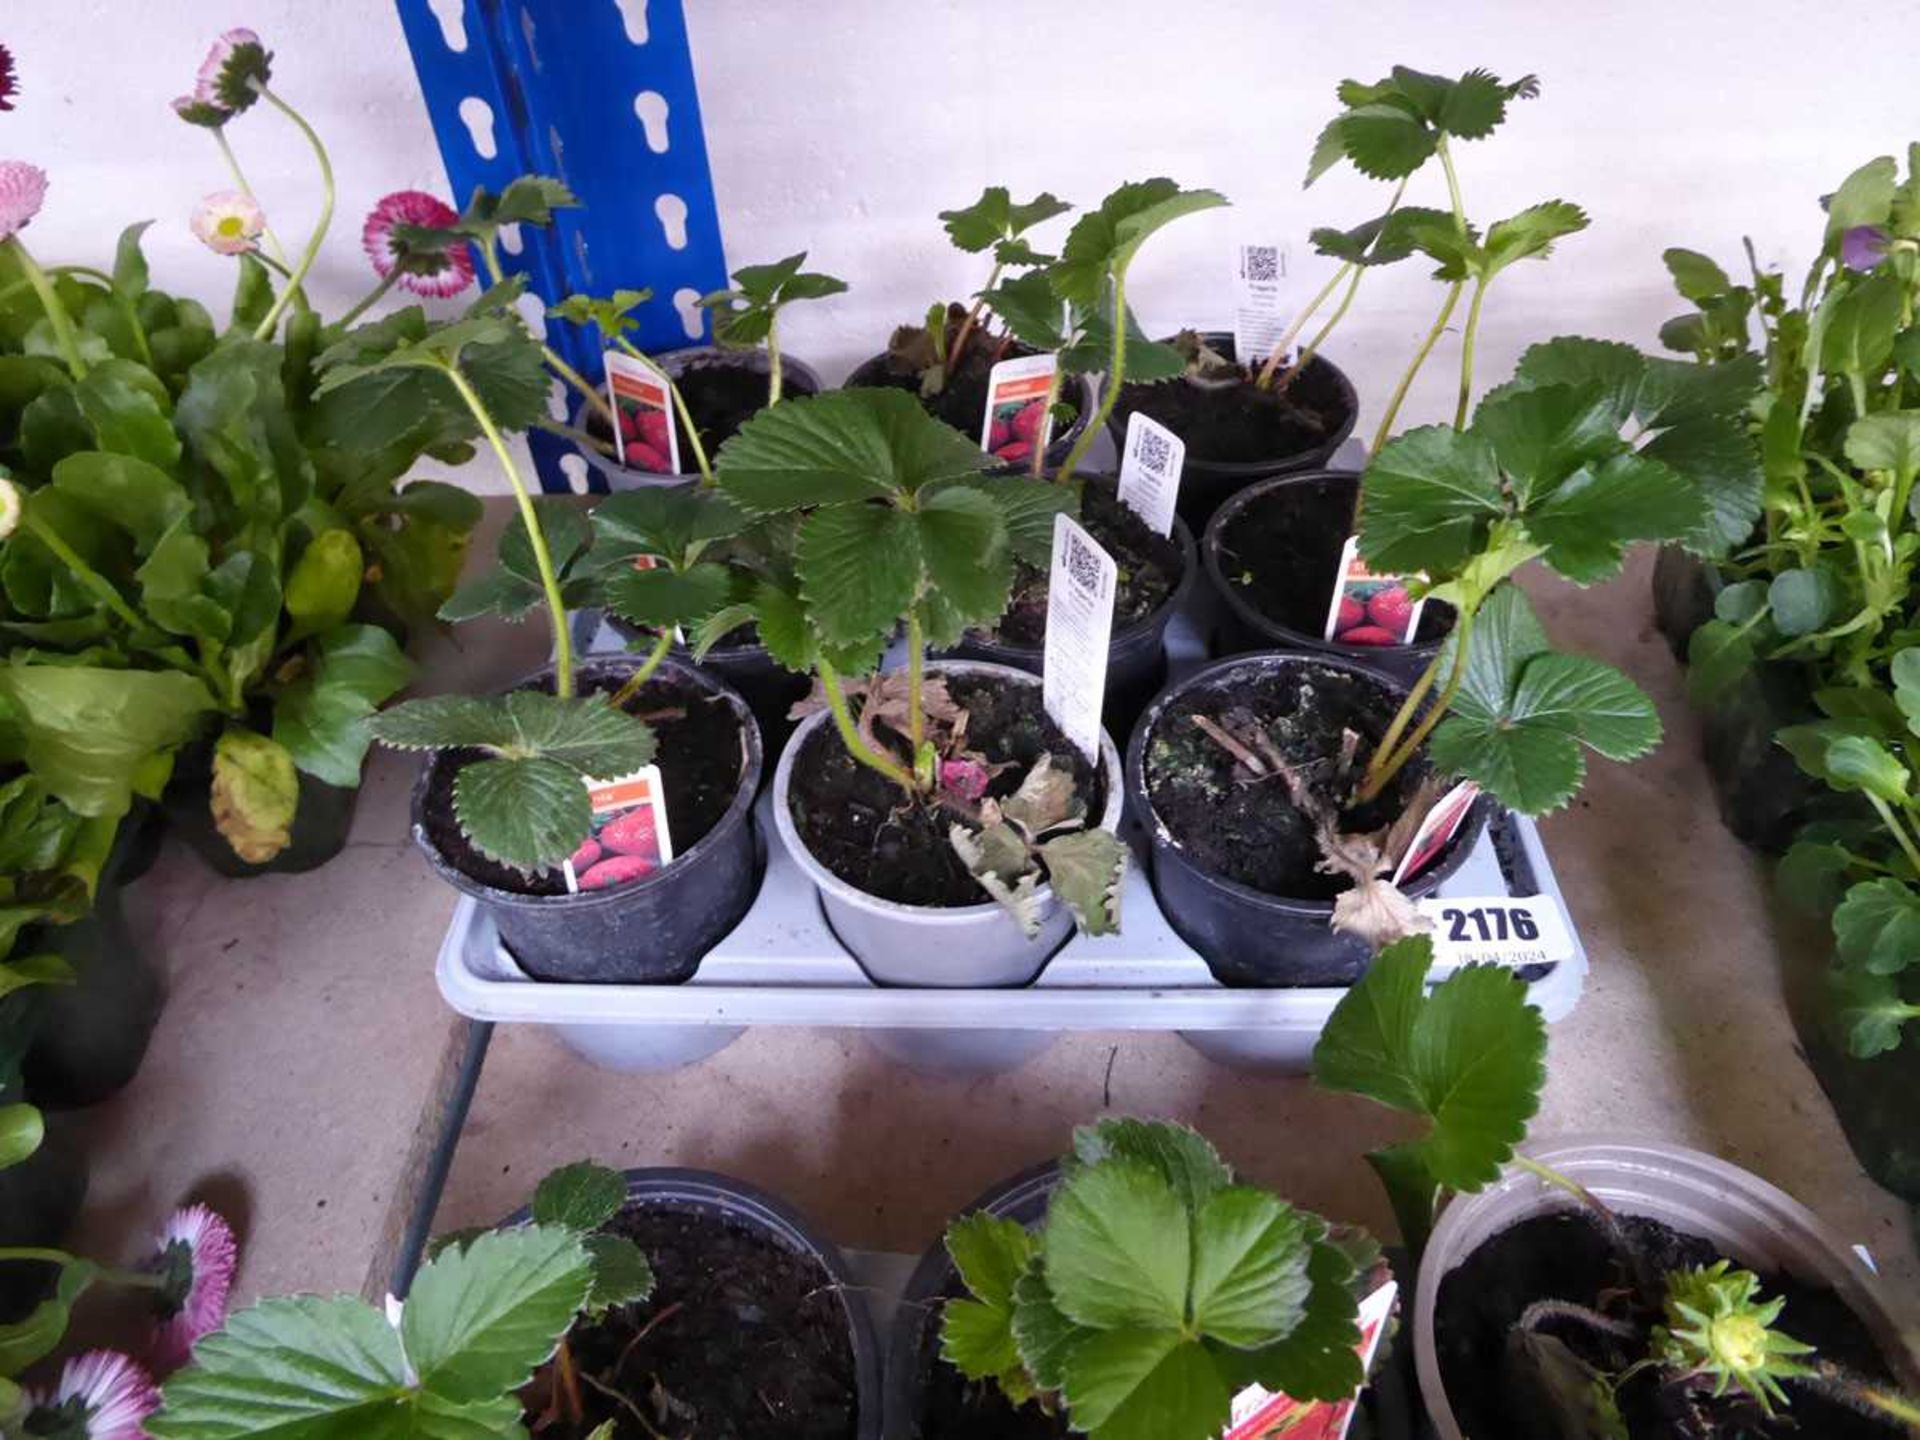 Tray containing 9 pots Elsanta strawberry plants